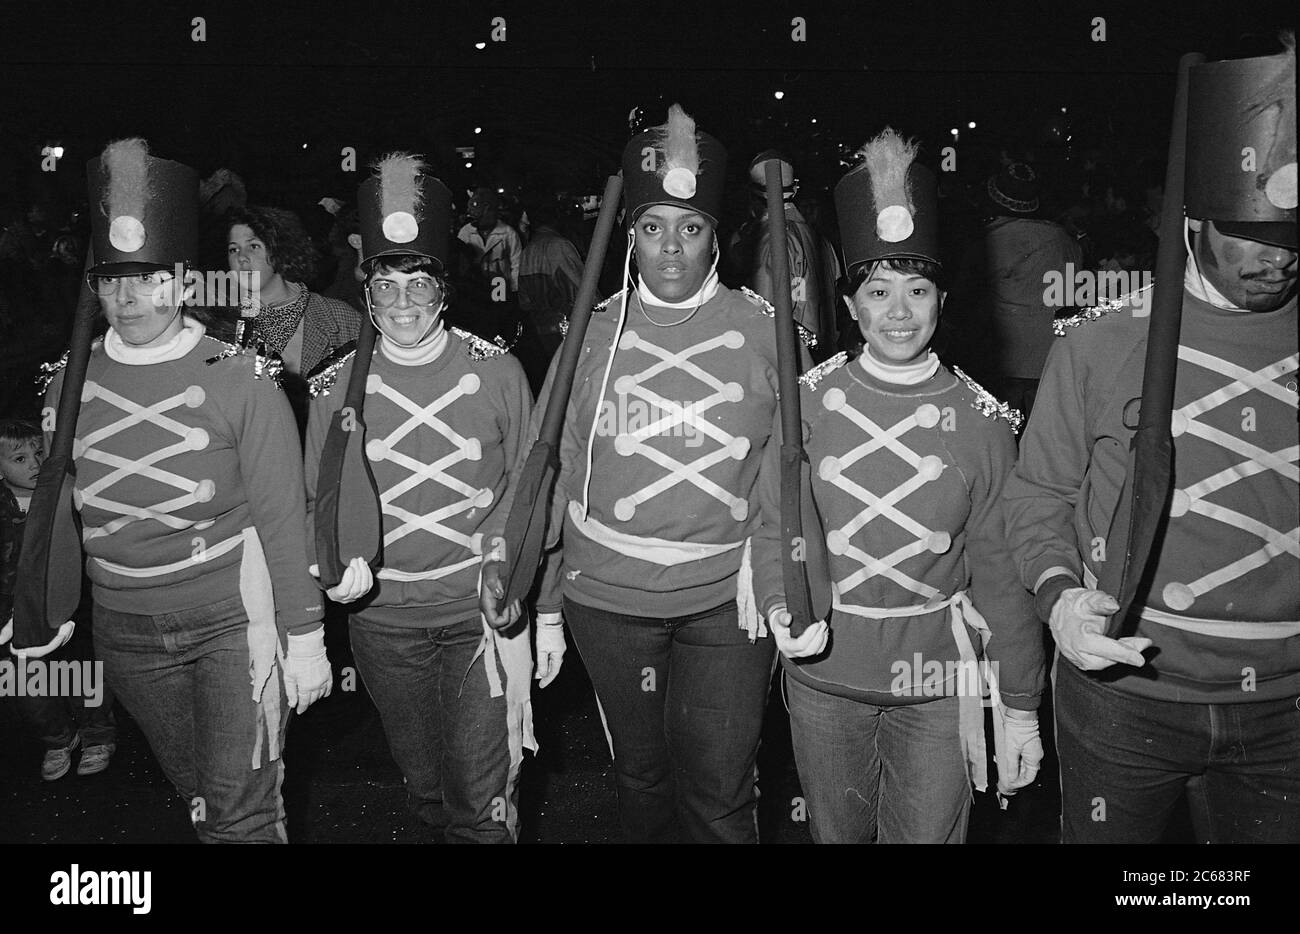 Marciare soldati alla Greenwich Village Halloween Parade, New York City, USA negli anni '80 fotografati con film in bianco e nero di notte. Foto Stock